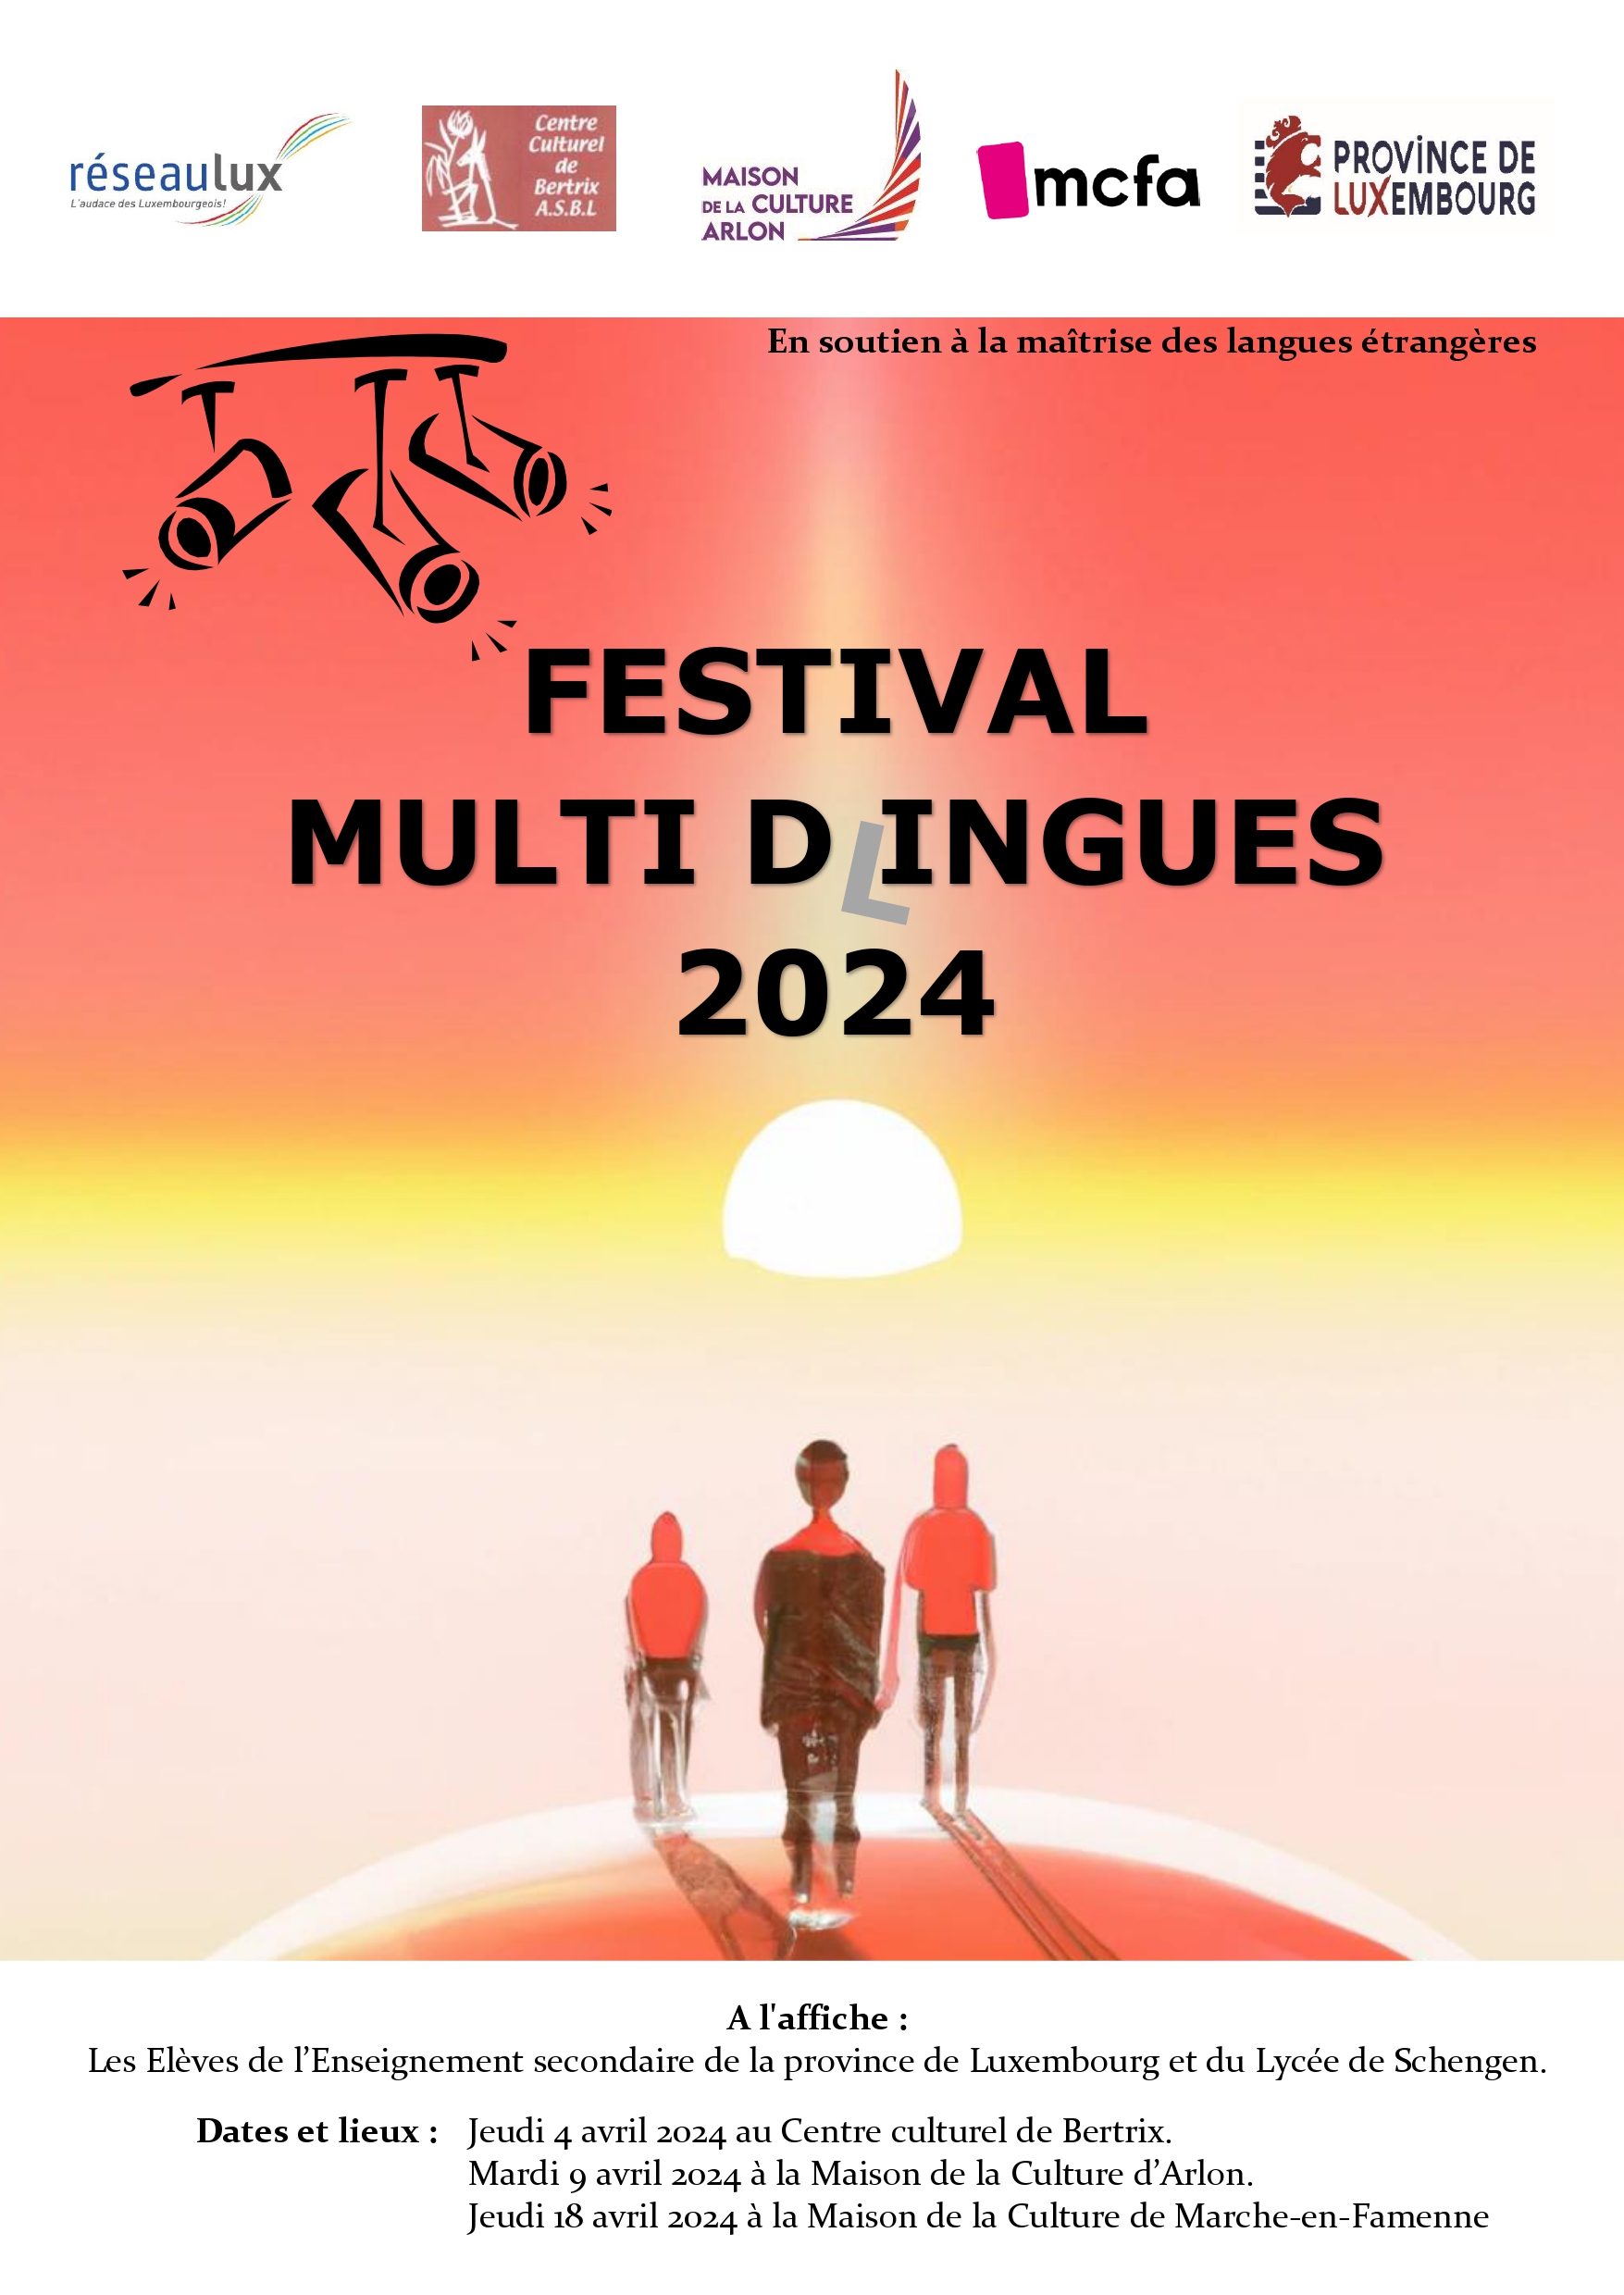 affiche multi(l)dingues festival 2024